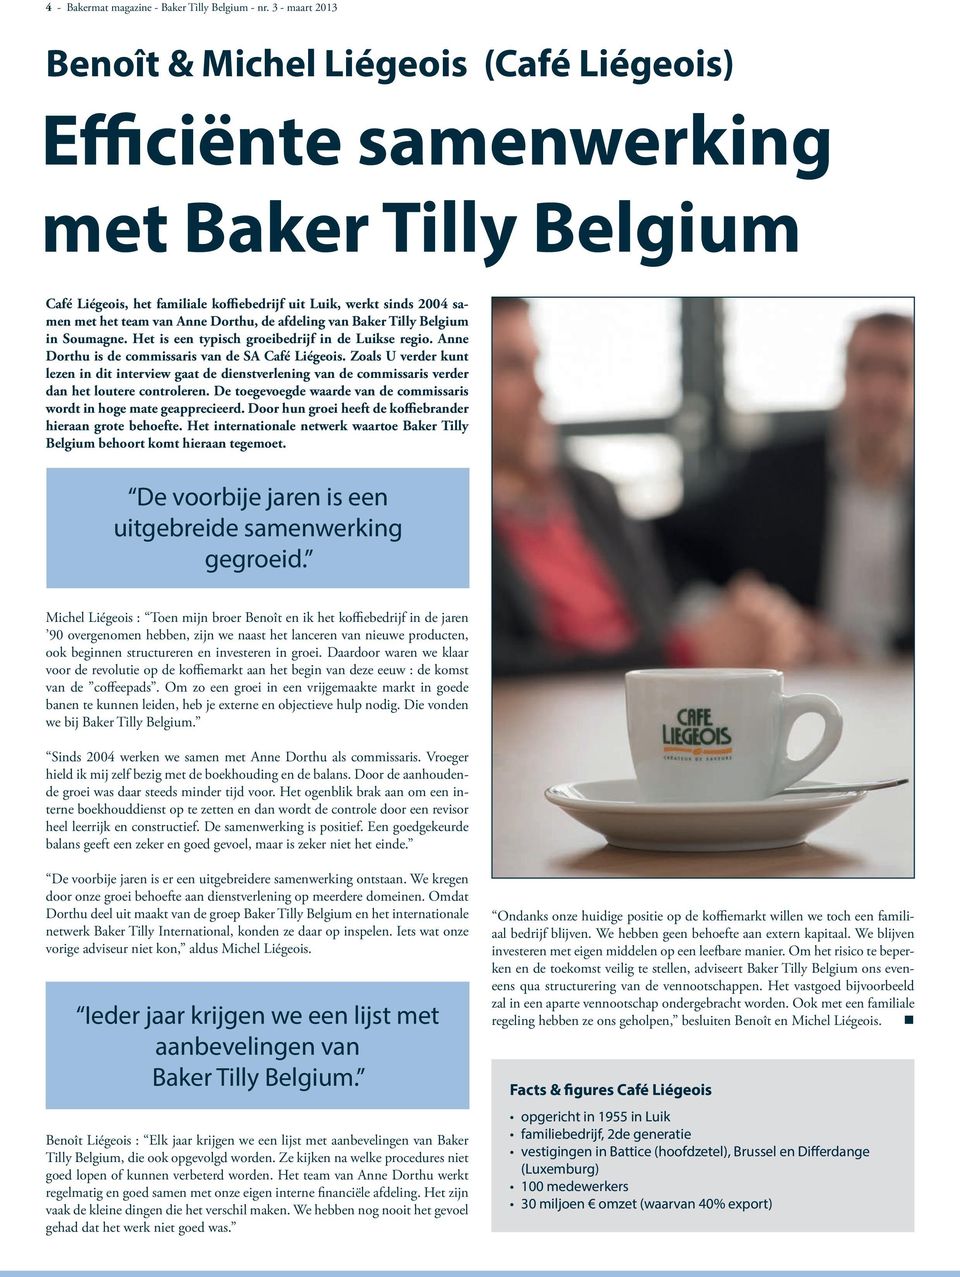 Anne Dorthu, de afdeling van Baker Tilly Belgium in Soumagne. Het is een typisch groeibedrijf in de Luikse regio. Anne Dorthu is de commissaris van de SA Café Liégeois.